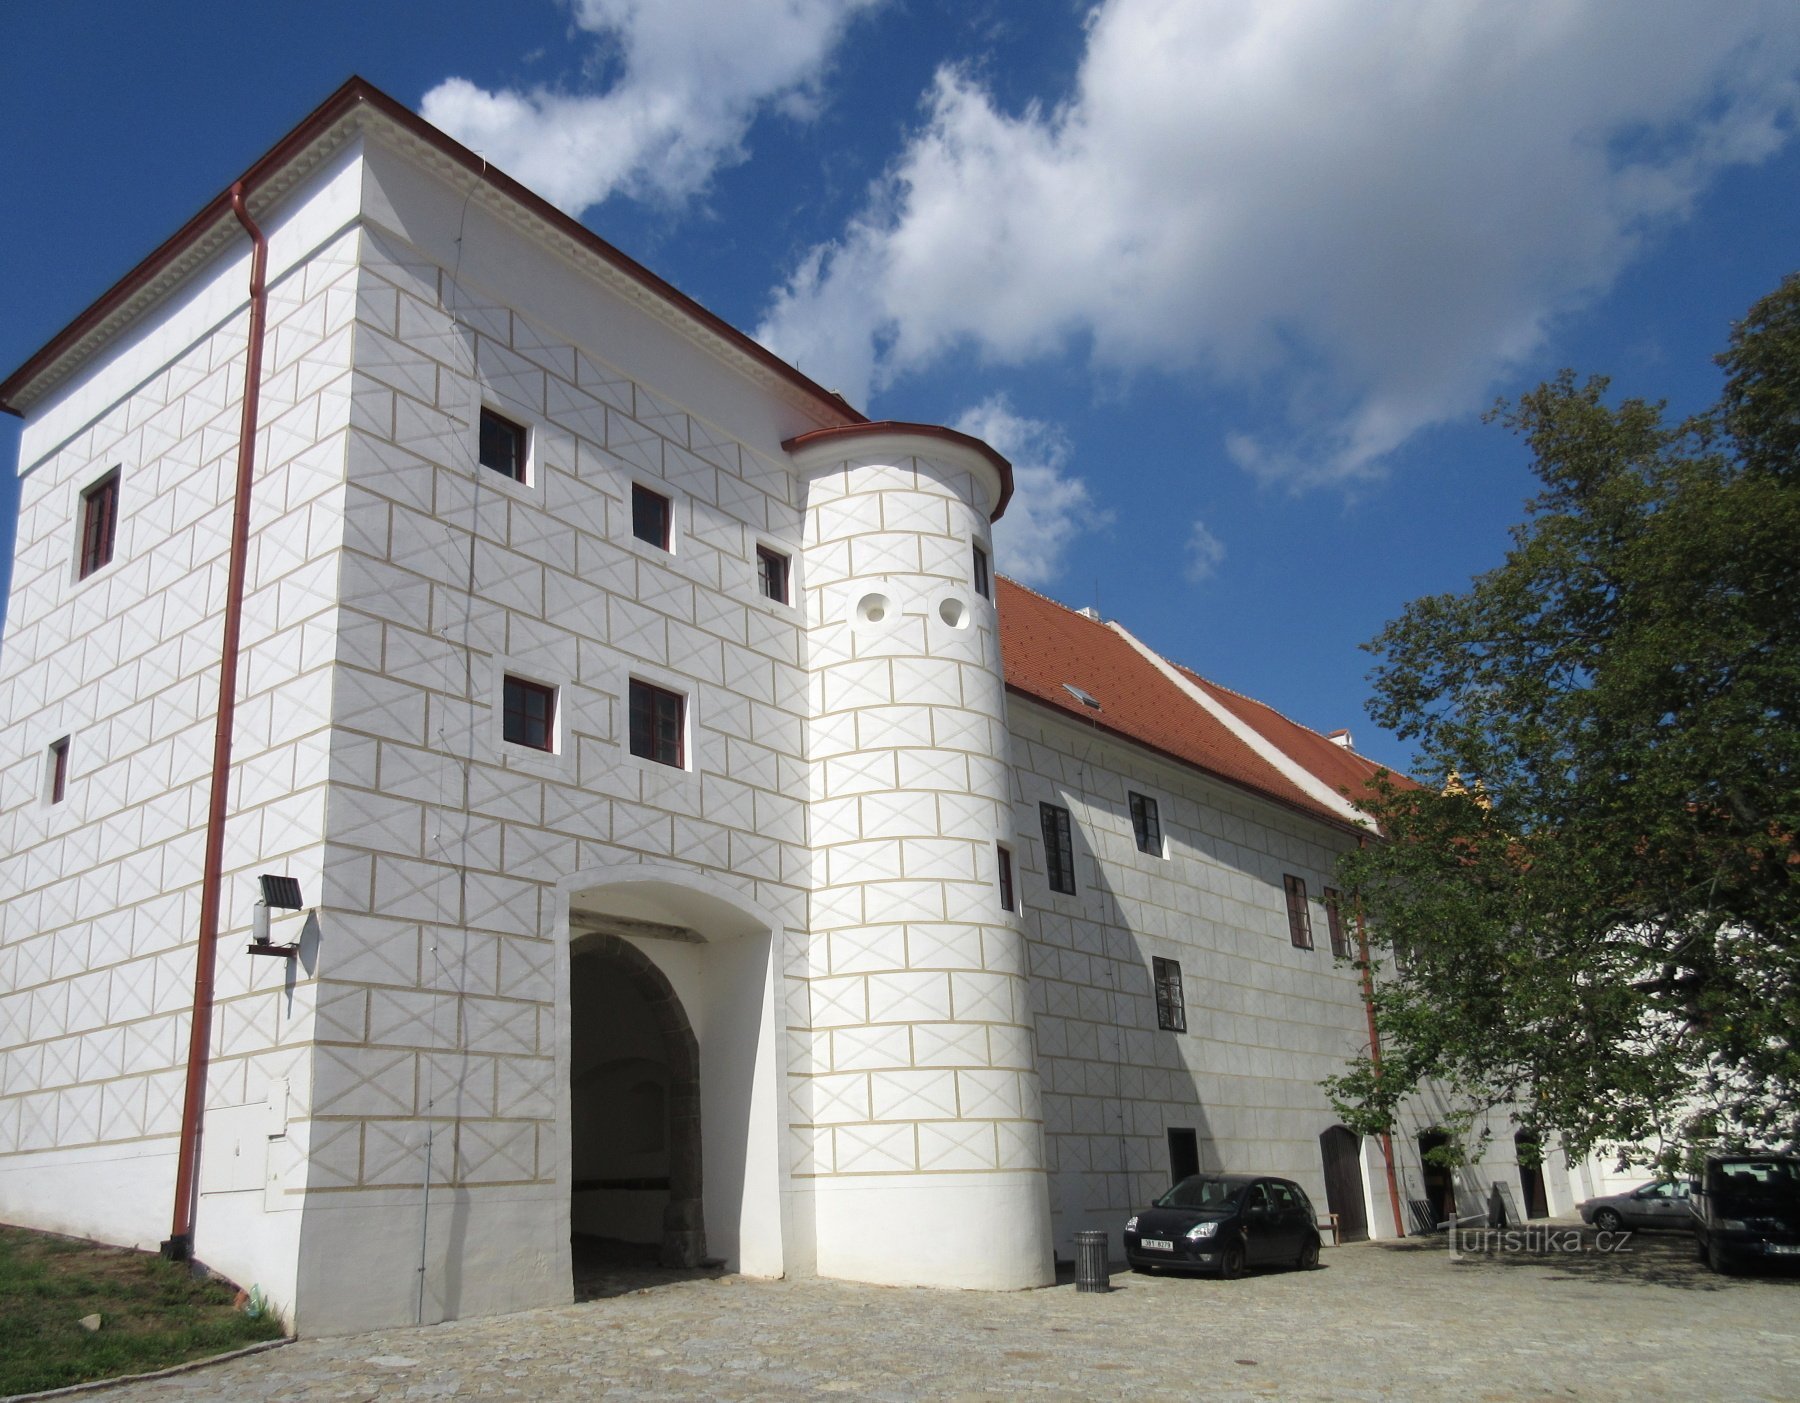 Třebíč – castelo, anteriormente um mosteiro beneditino, agora um museu